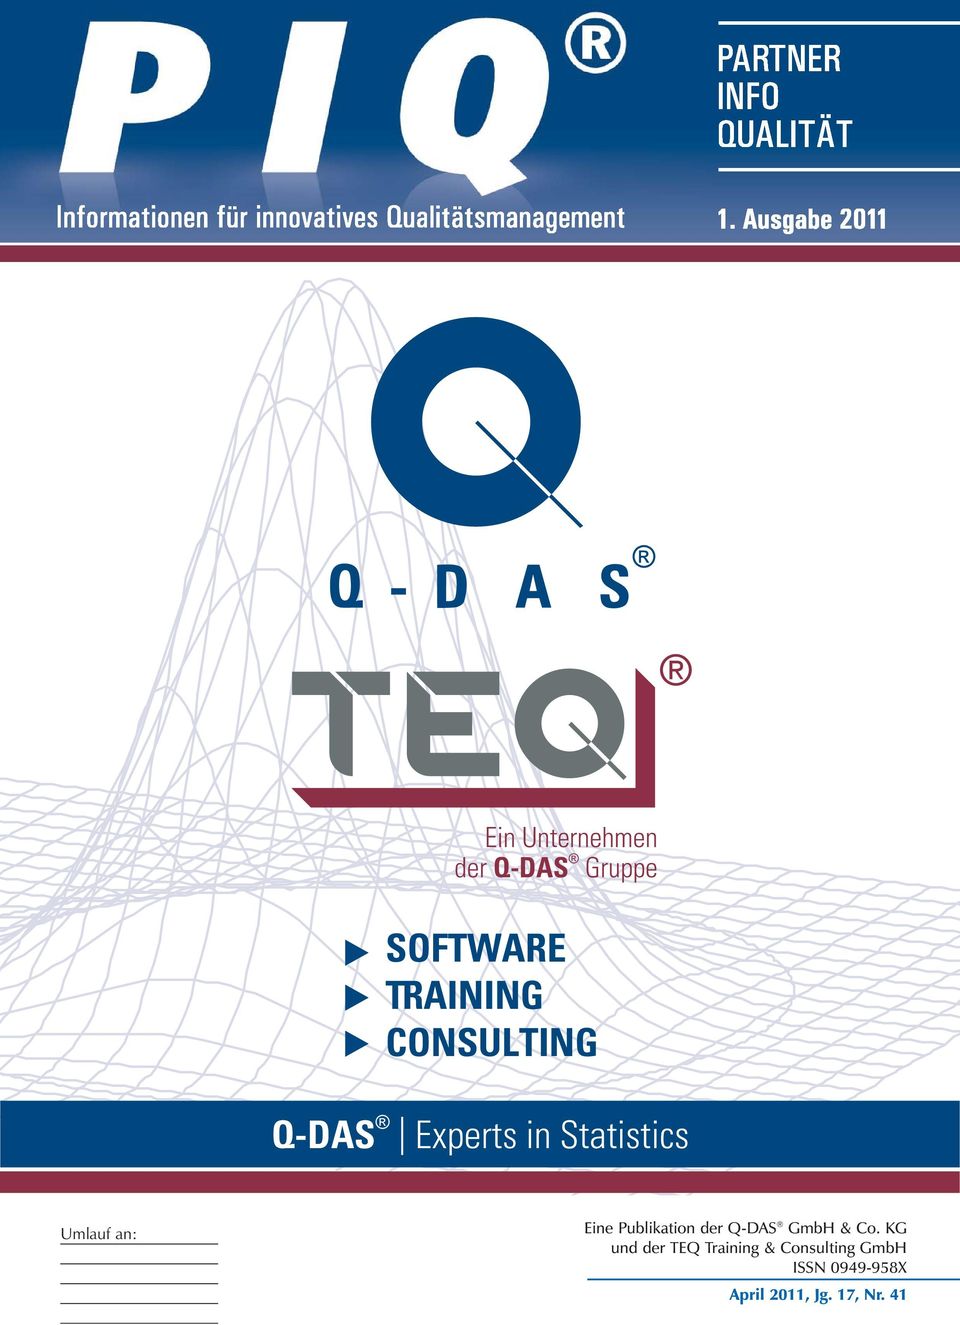 Publikation der Q-DAS GmbH & Co.